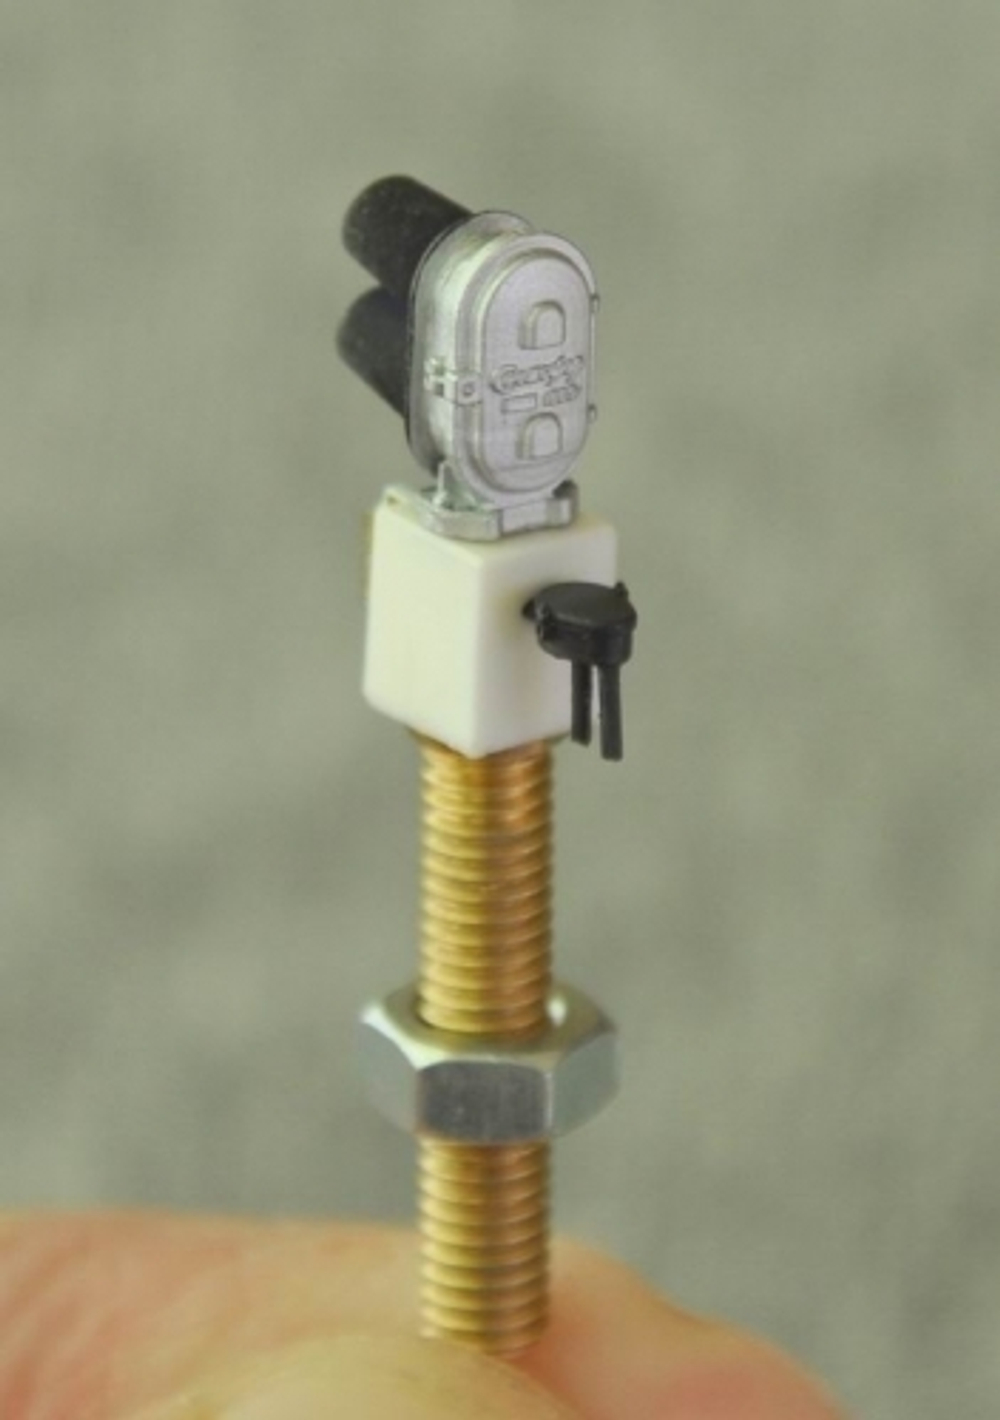 Светофор двузначный карликовый Тип БС (TT, 1:120)